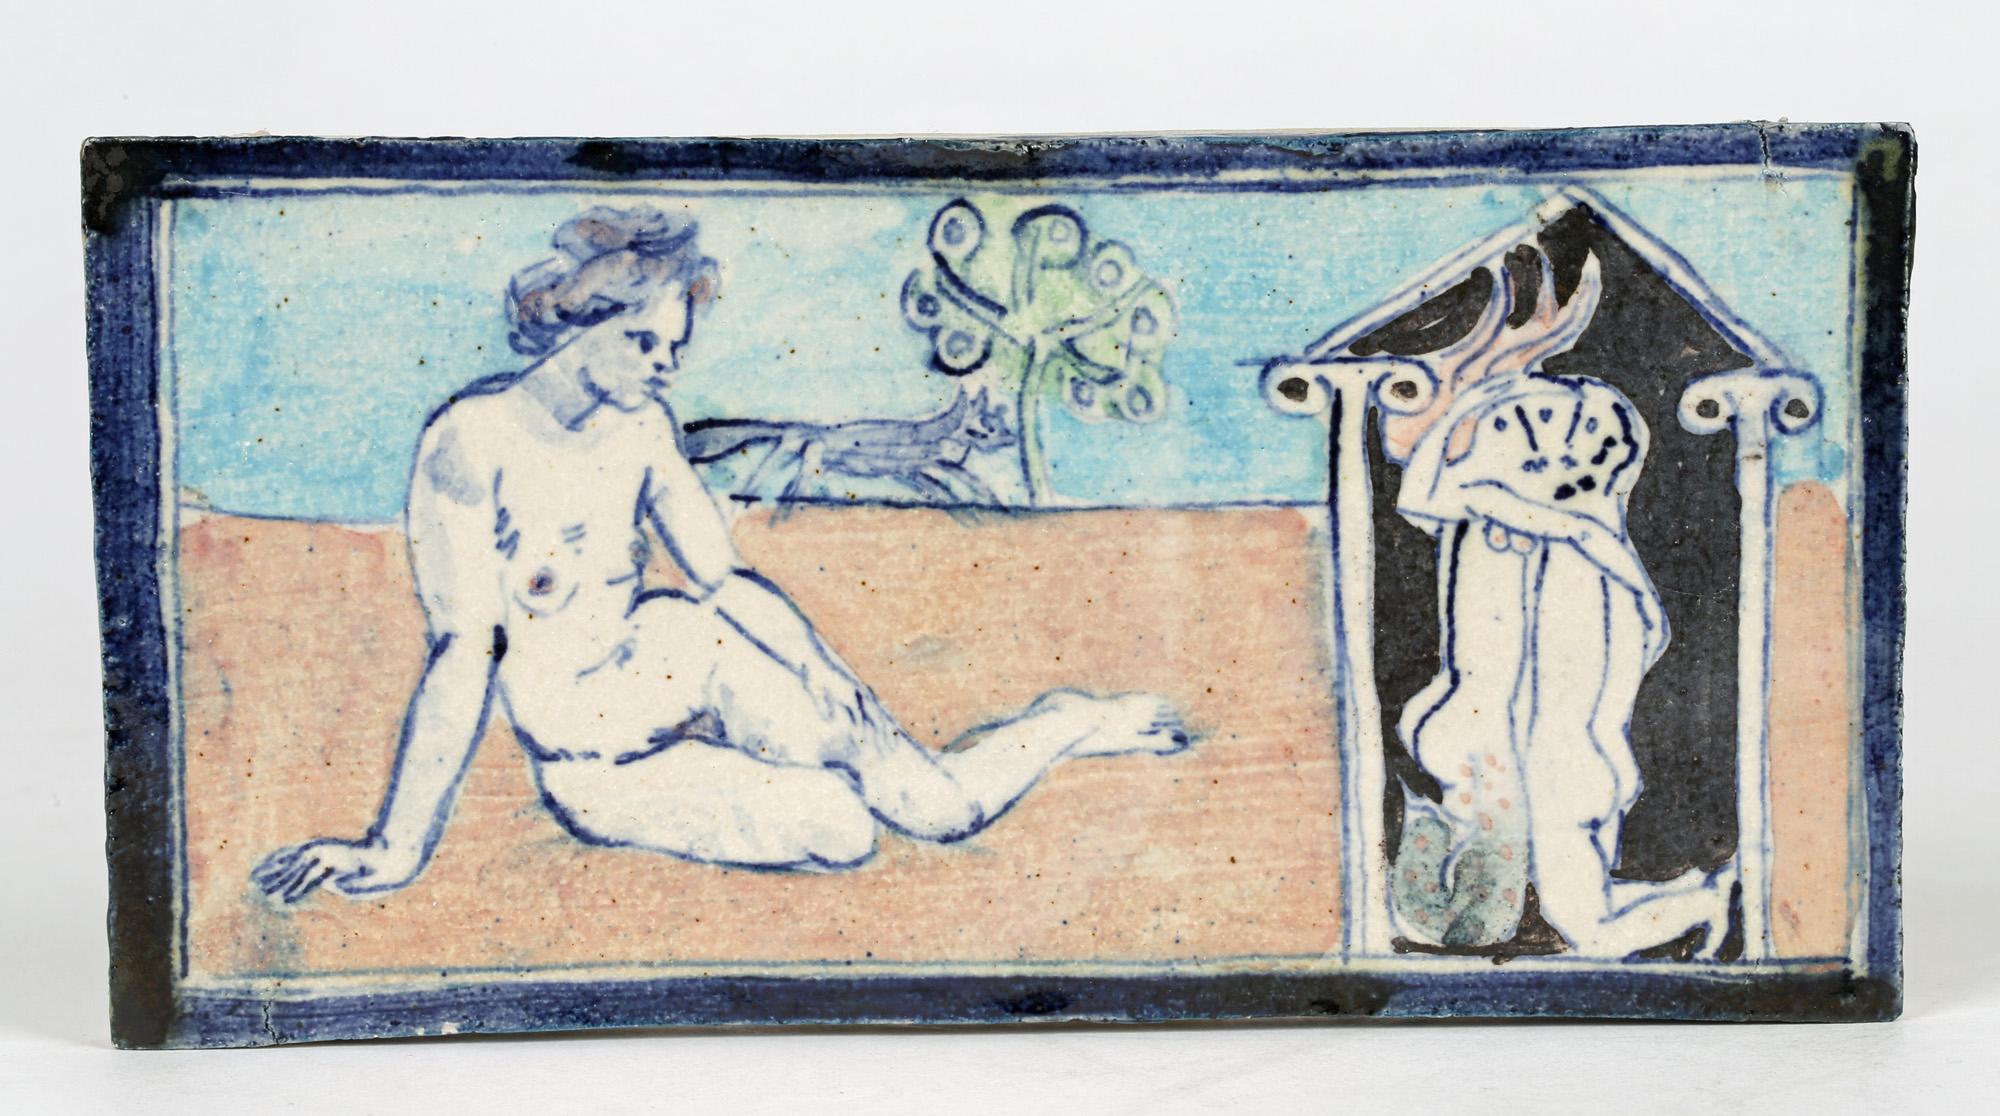 Eric James Mellon Unique Studio Pottery Tile with Nudes Titled Mermaid 2